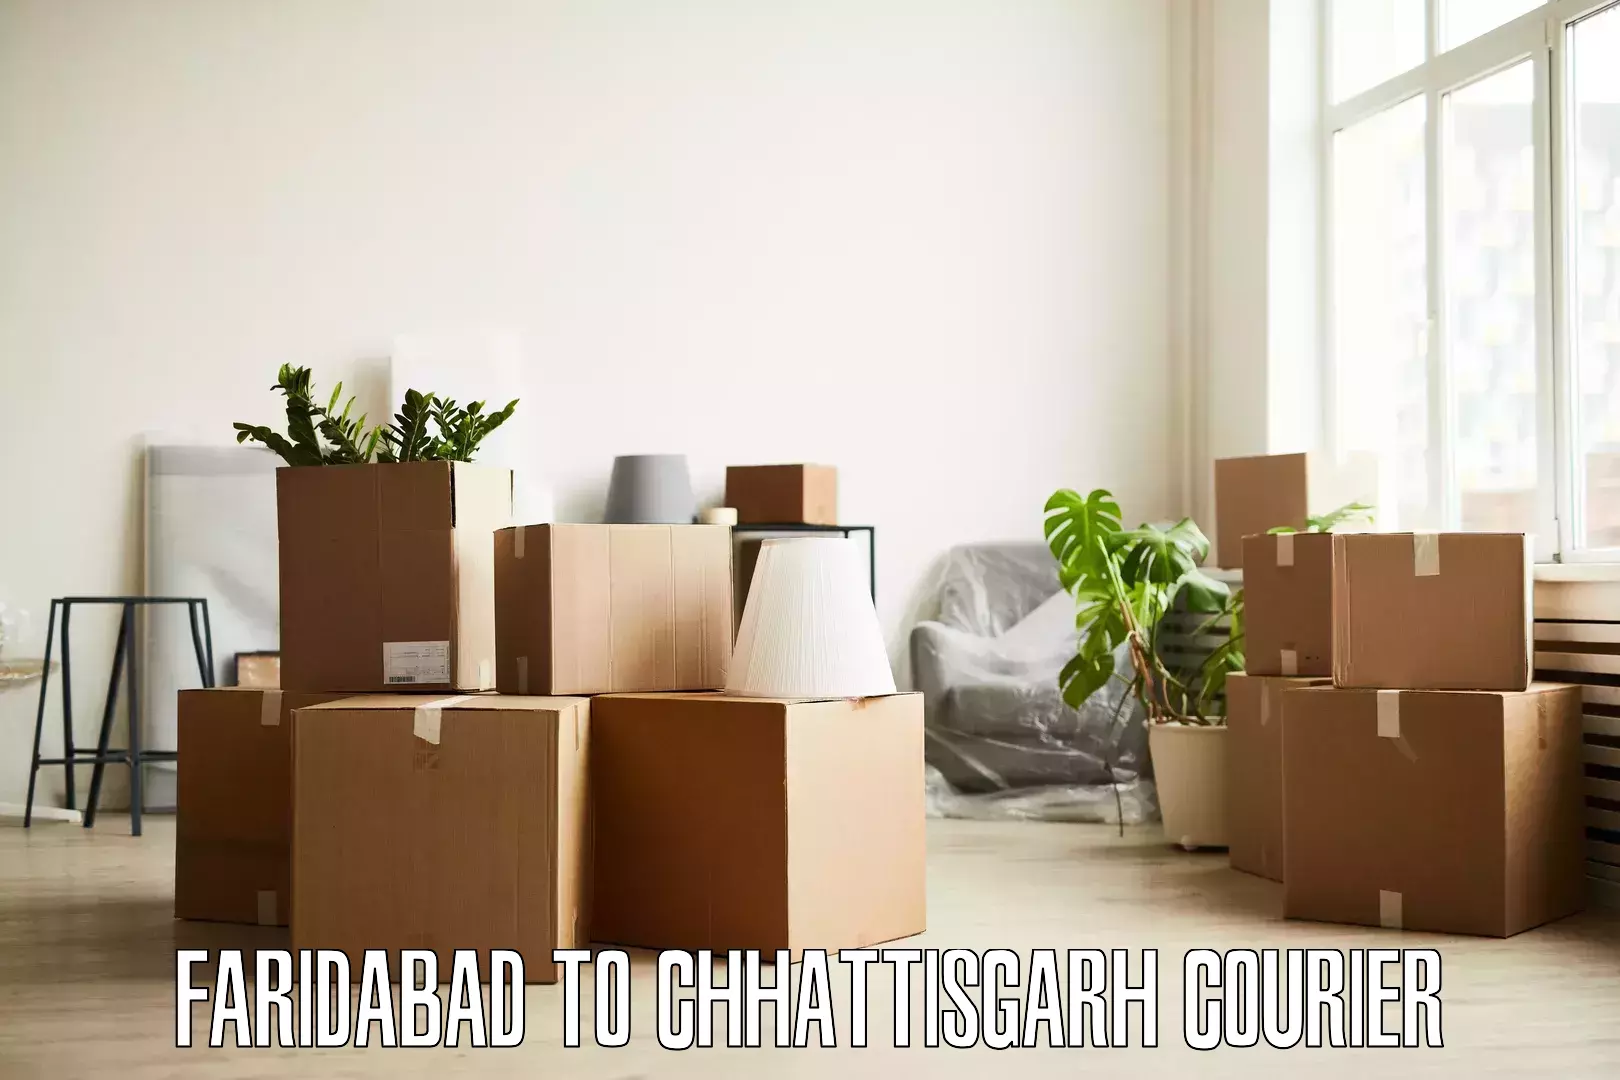 Moving and packing experts Faridabad to Wadrafnagar